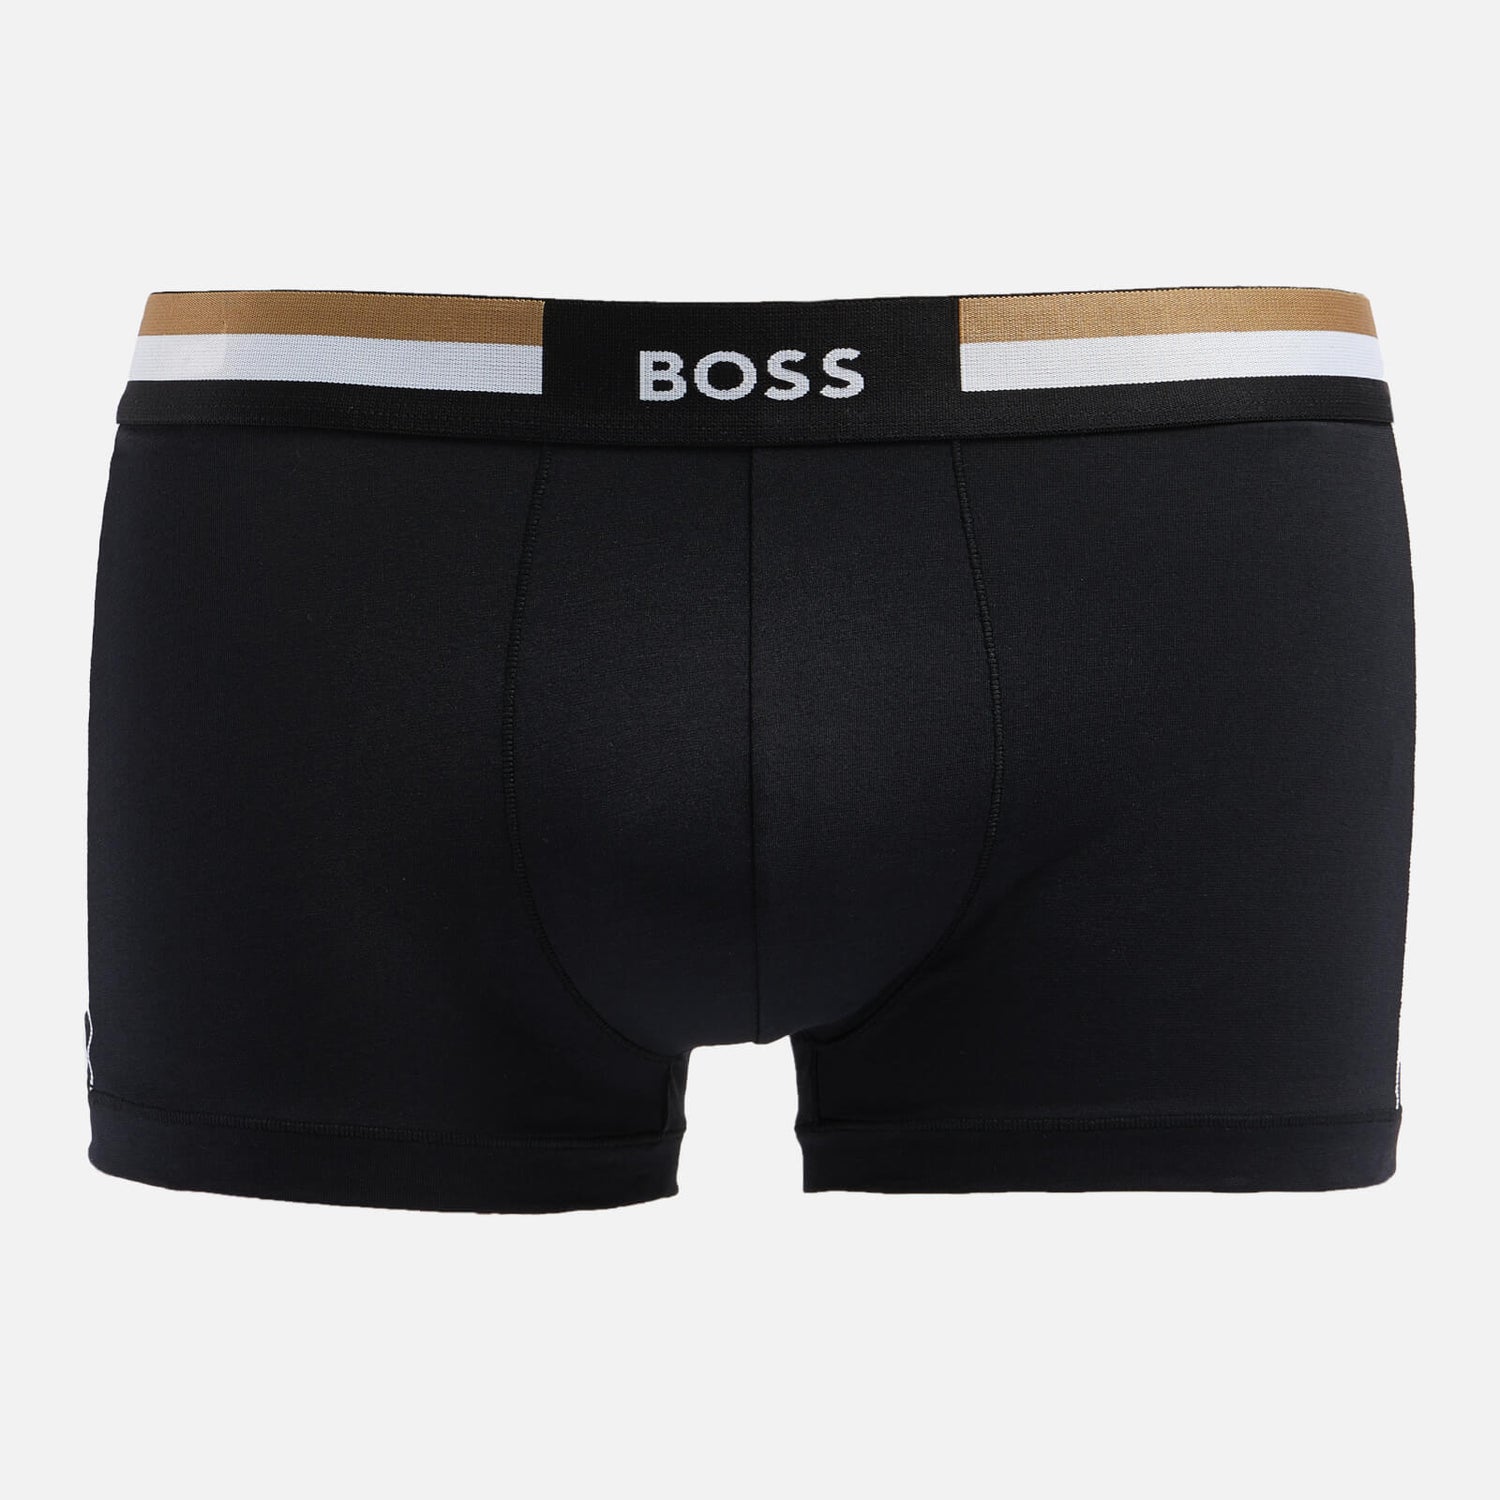 BOSS Bodywear Men's Vitality Trunks - Black